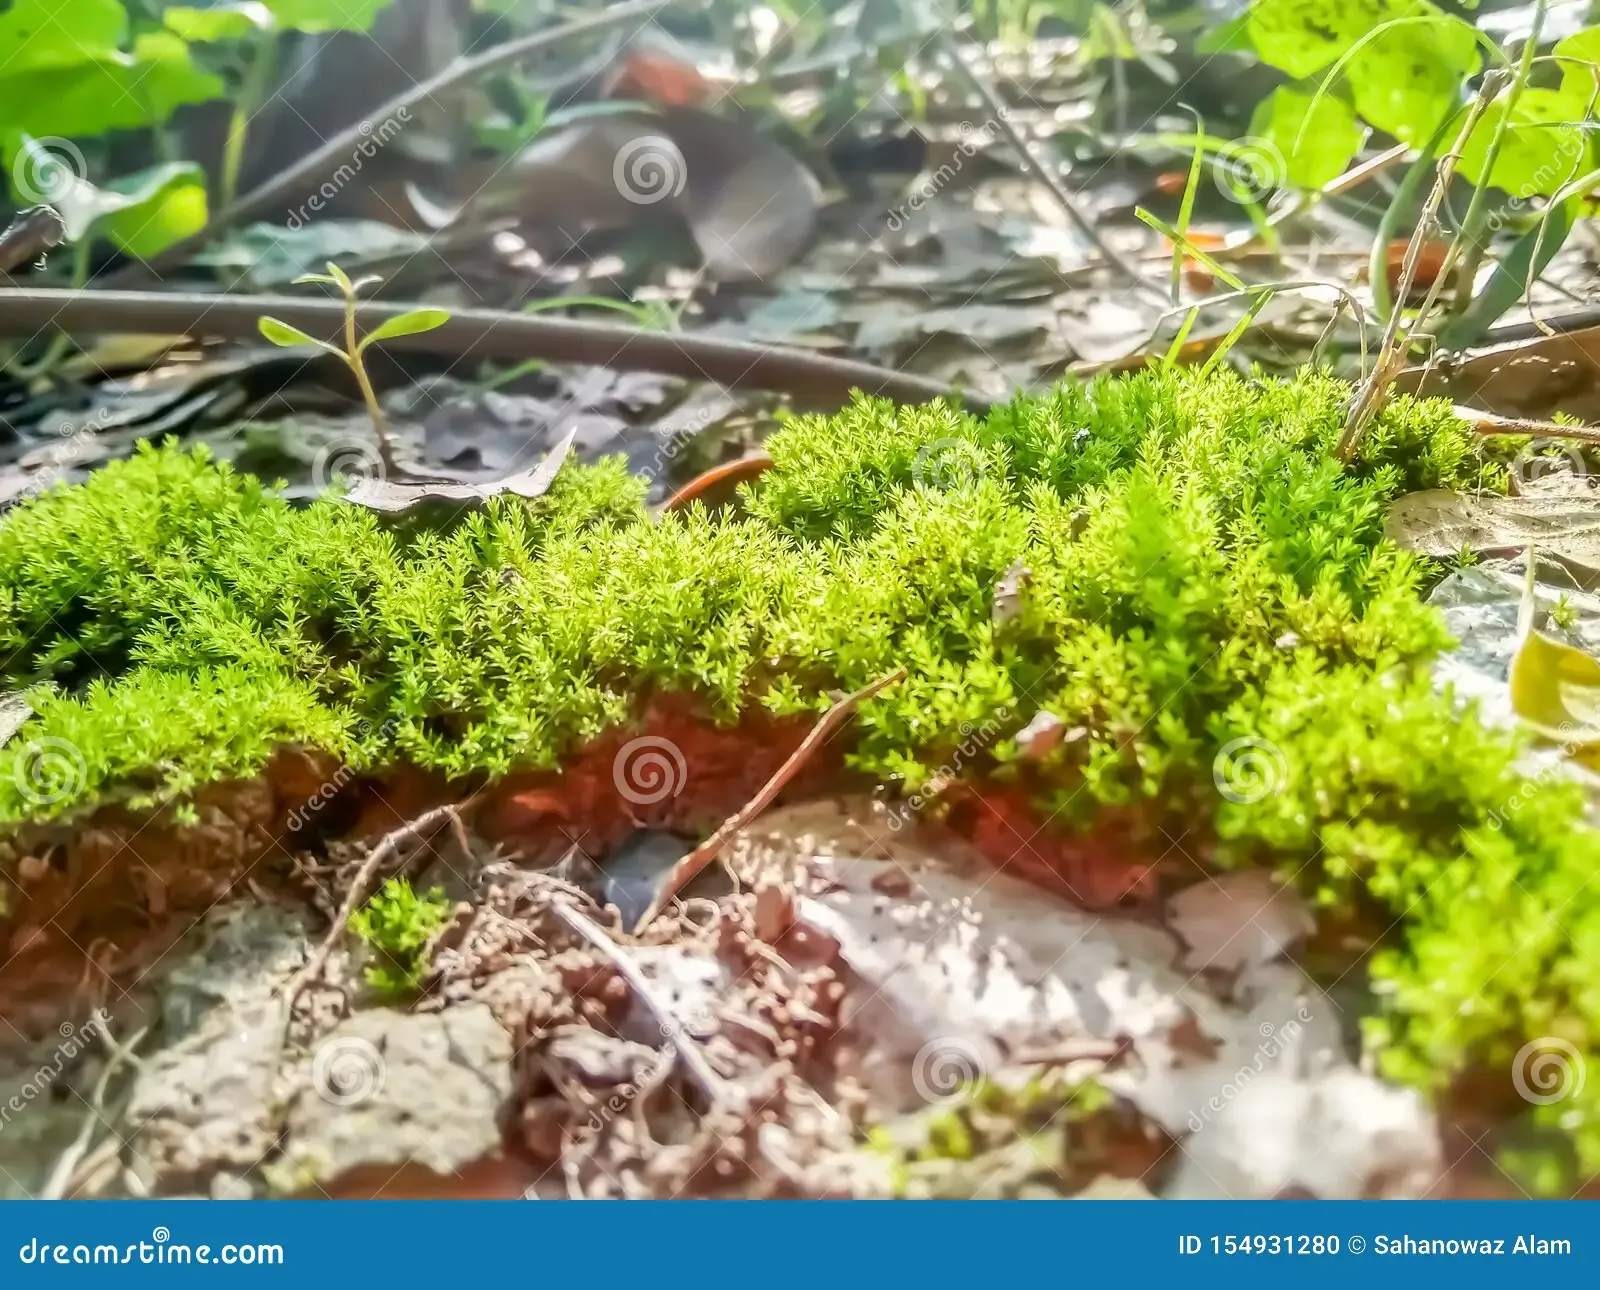 green-moss-closeup-forest-covered-soil-ground-texture-closeupmoss-fresh-fungus-garden-growth-grunge-herb-hill-jungle-154931280.jpg